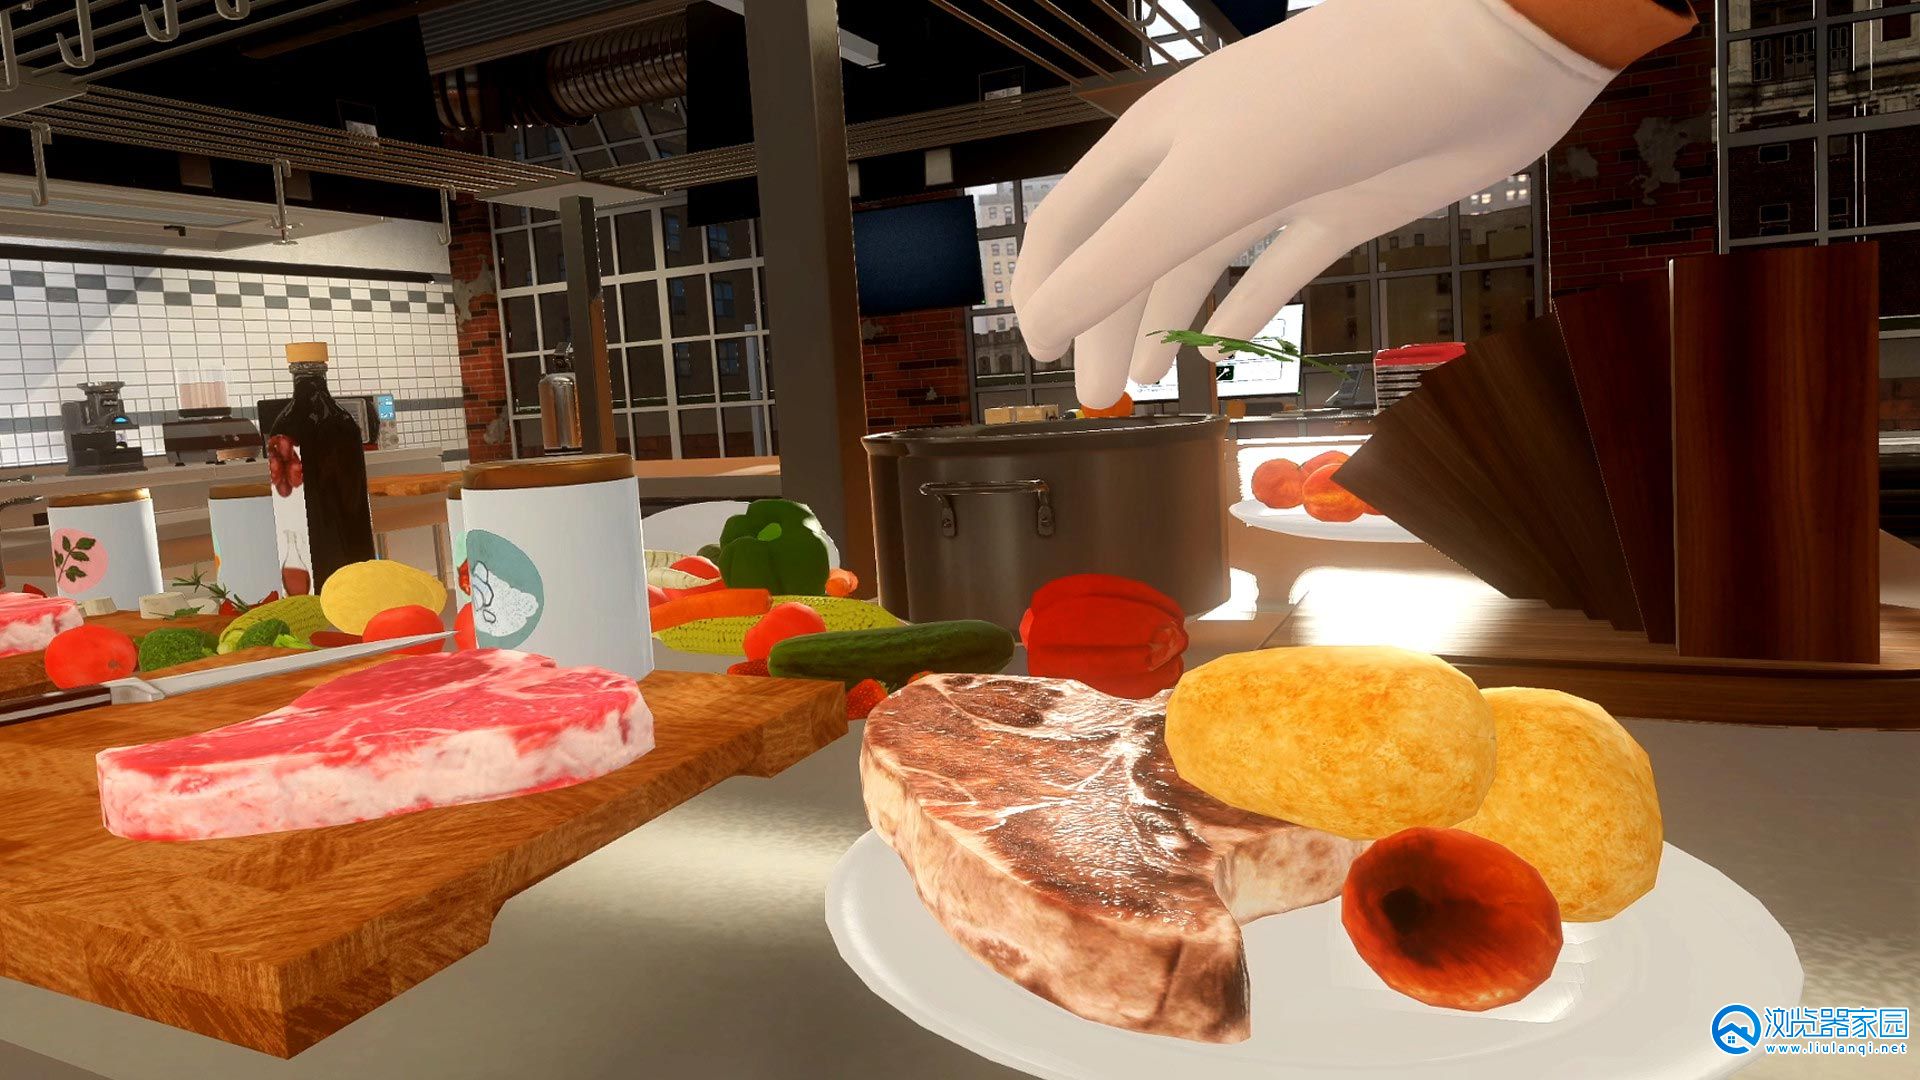 烧肉模拟游戏大全-烧肉模拟游戏手机版下载合集-烧肉模拟类手游推荐